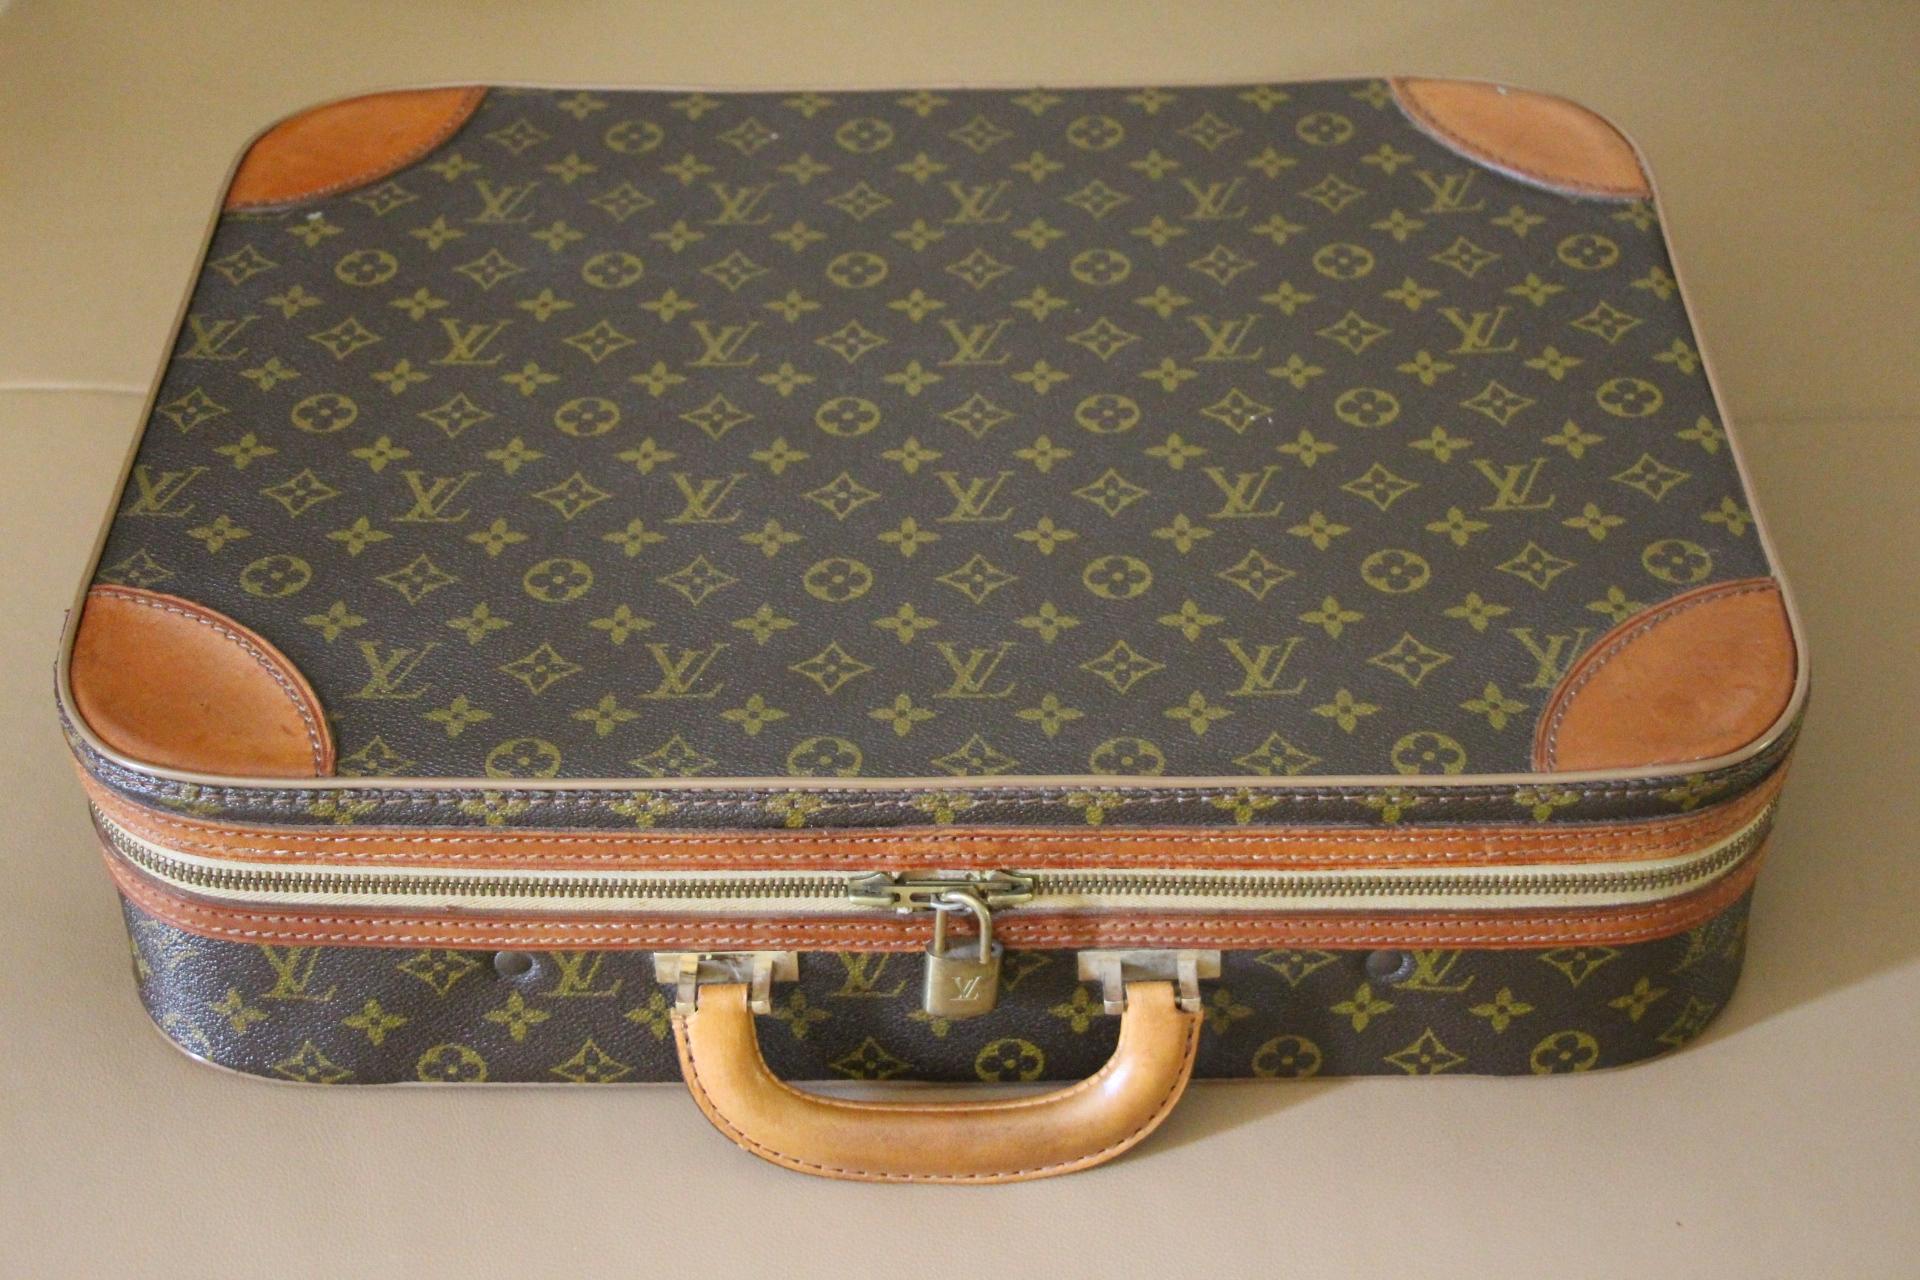 Voici une magnifique valise semi-rigide Louis Vuitton monogramme. Il se ferme grâce à ses 2 fermetures éclair en douceur et sans effort.
Il est doté d'une poignée en cuir large et confortable.
Quant à son intérieur, il est en très bon état. Il a